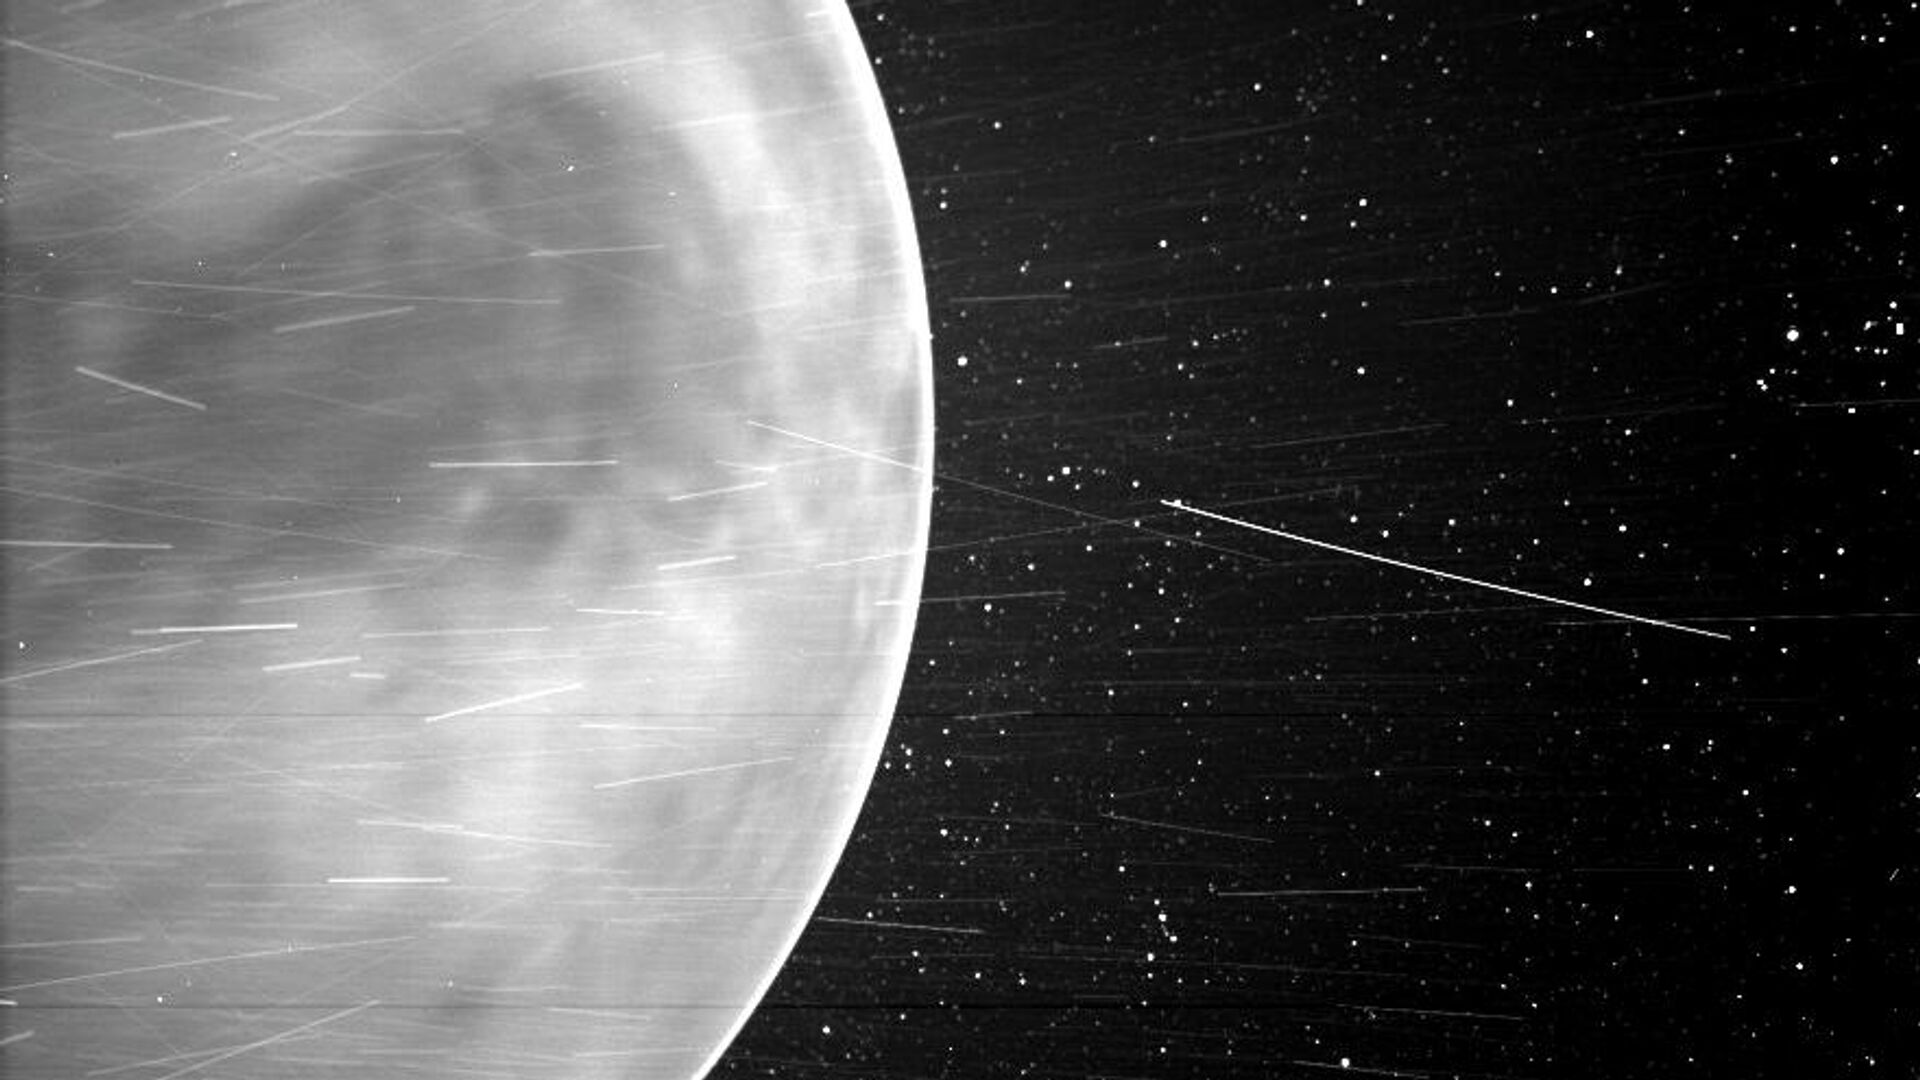 Изображение Венеры и светящейся полоски в ее атмосфере, сделанное прибором WISPR солнечного зонда NASA Parker в июле 2020 года. Темная область в центре изображения - Земля Афродиты, самый большой горный регион на поверхности Венеры. Яркие полосы вызваны заряженными частицами солнечного ветра, отраженными частицами космической пыли и частицами материала космического корабля - РИА Новости, 1920, 25.02.2021